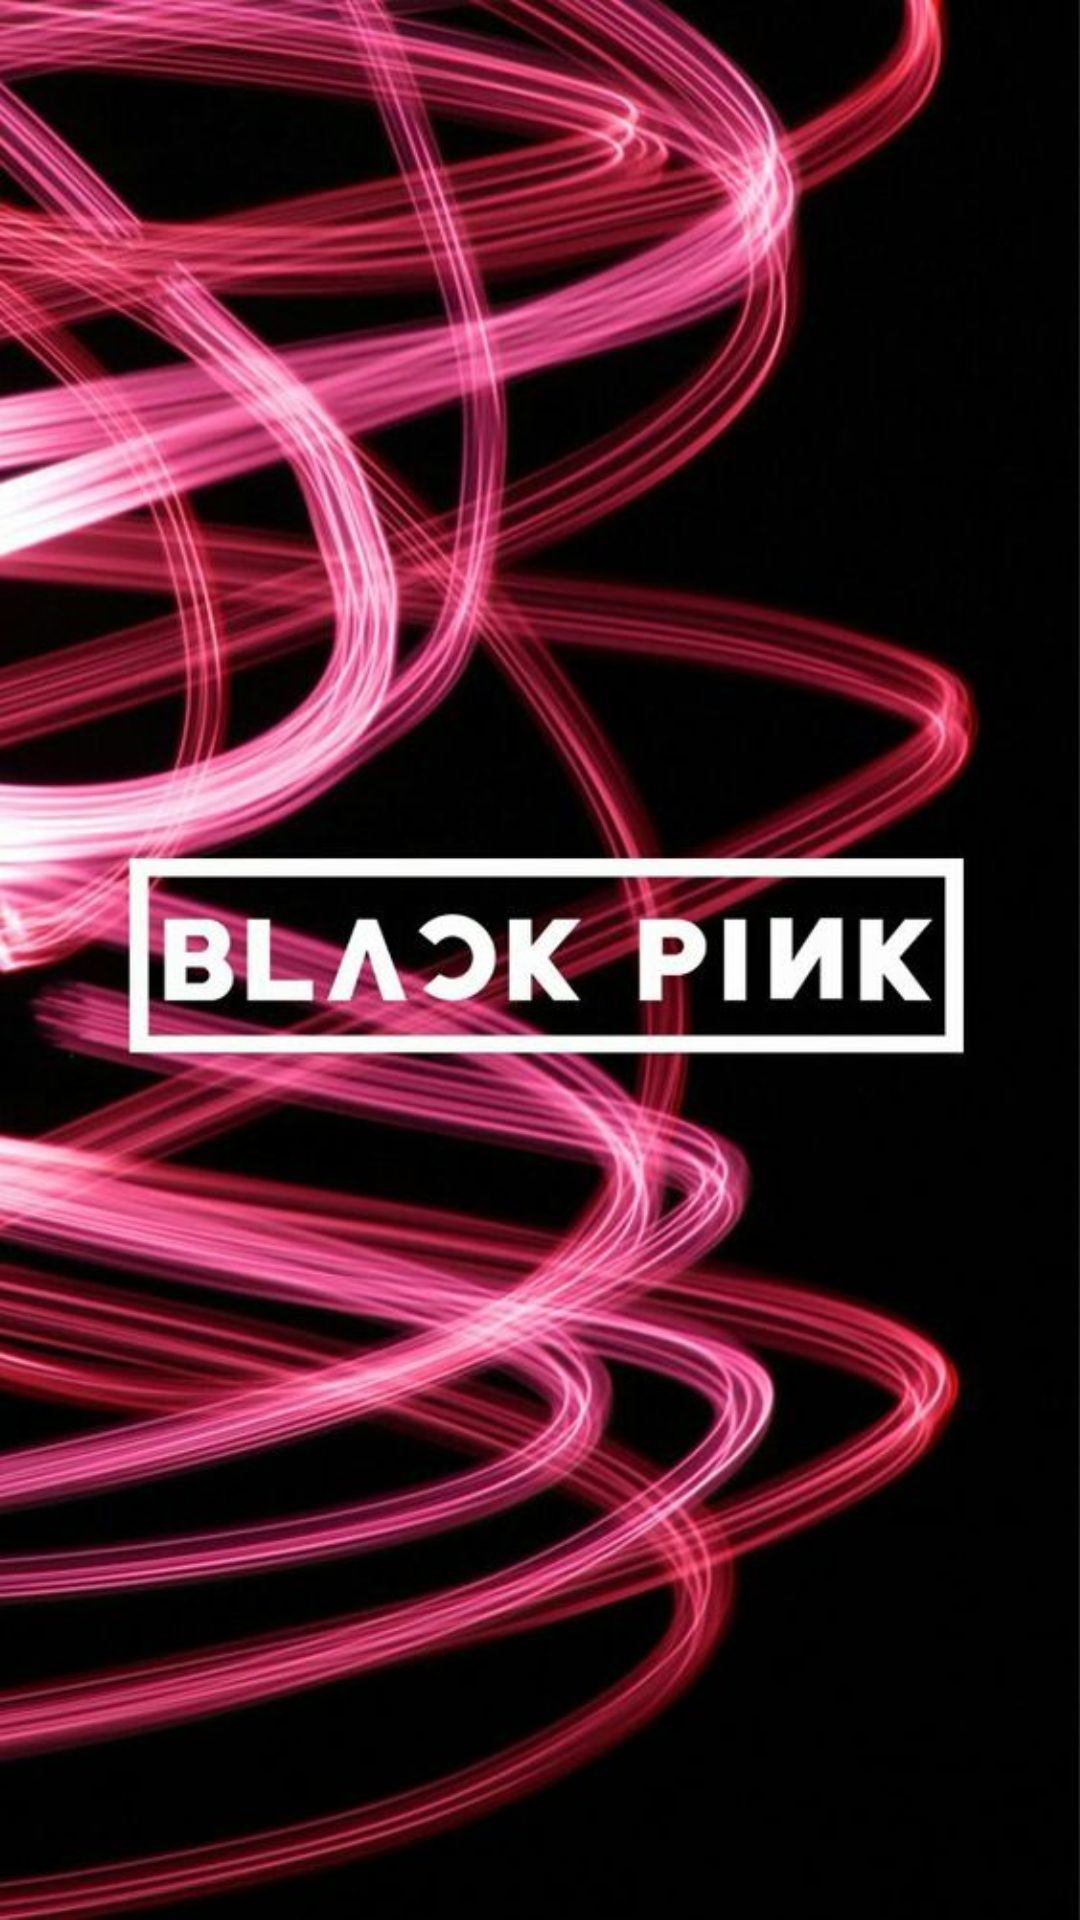 Logo BlackPink nổi bật giữa màu đen và hồng